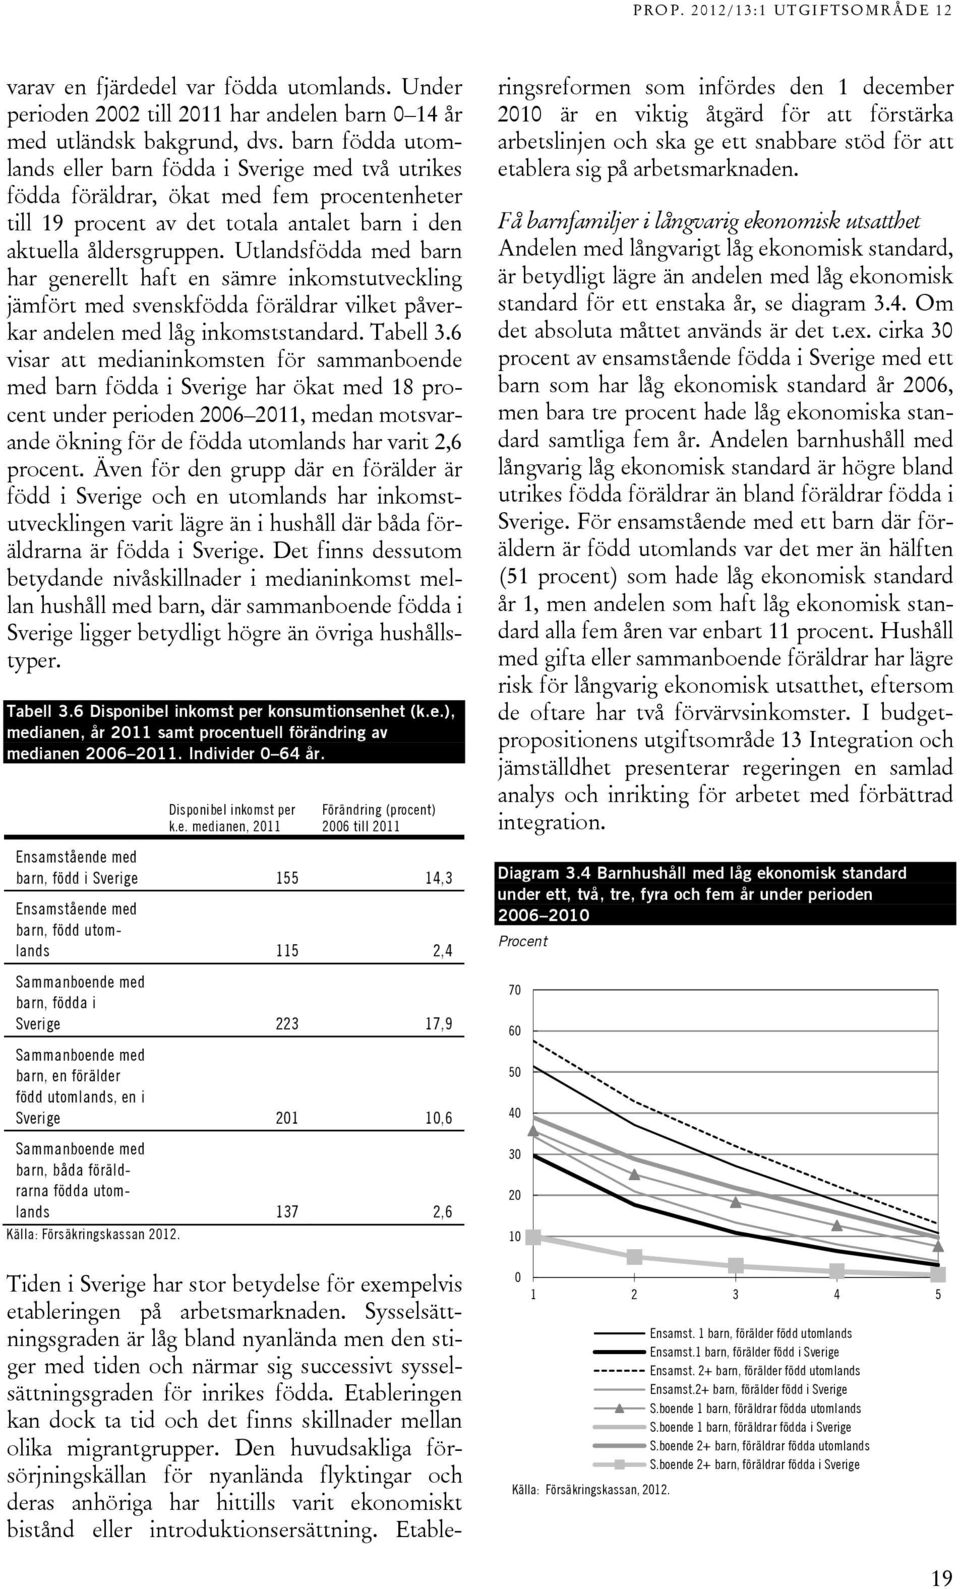 Utlandsfödda med barn har generellt haft en sämre inkomstutveckling jämfört med svenskfödda föräldrar vilket påverkar andelen med låg inkomststandard. Tabell 3.